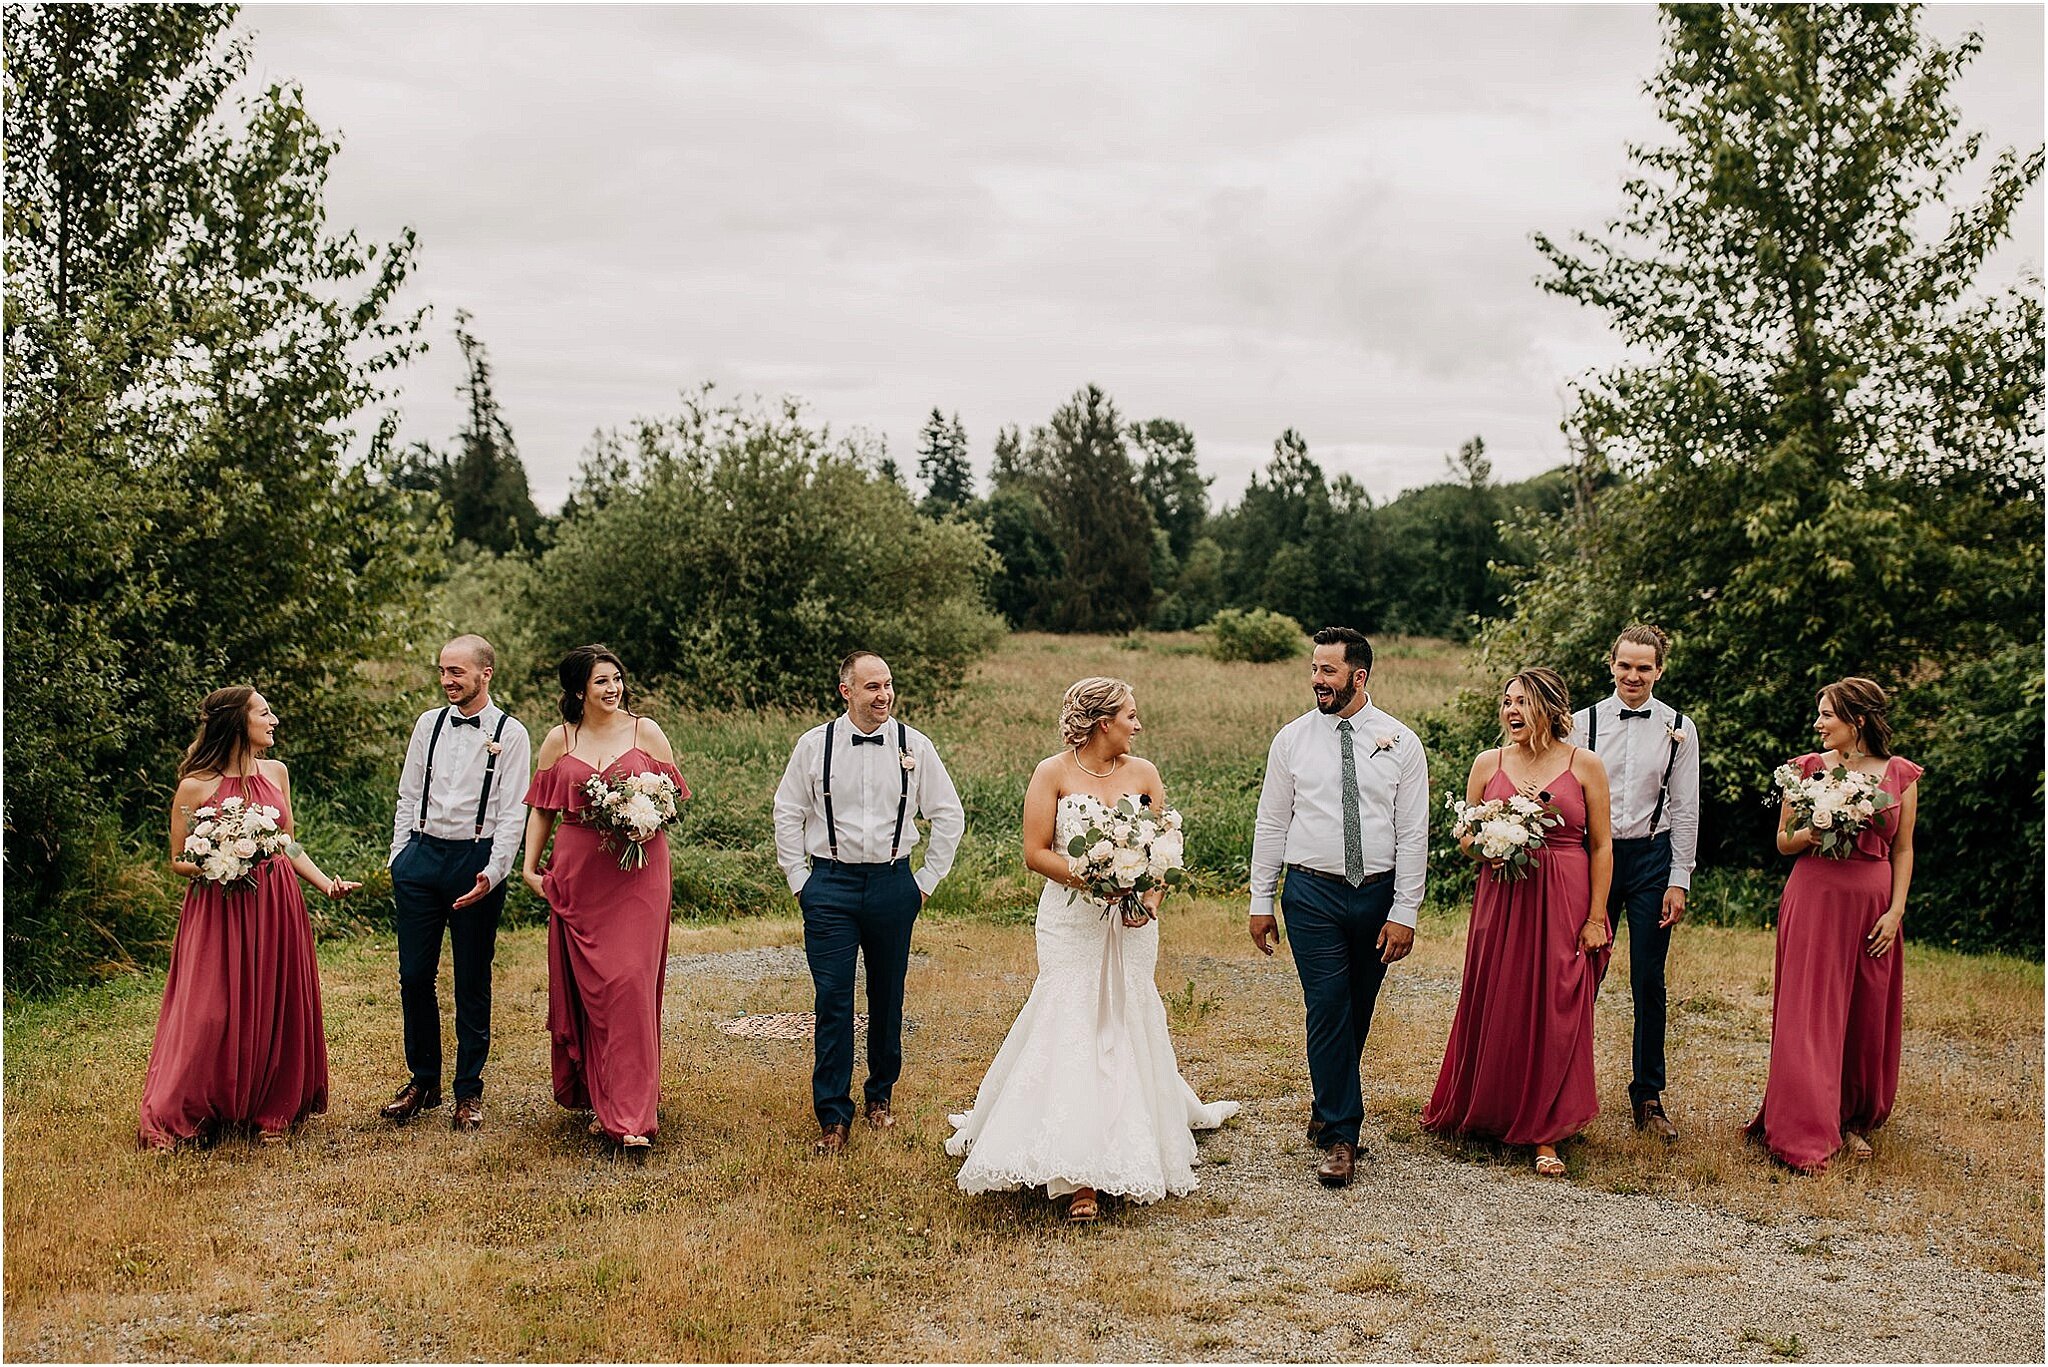 outdoor wedding party portrait in Surrey BC